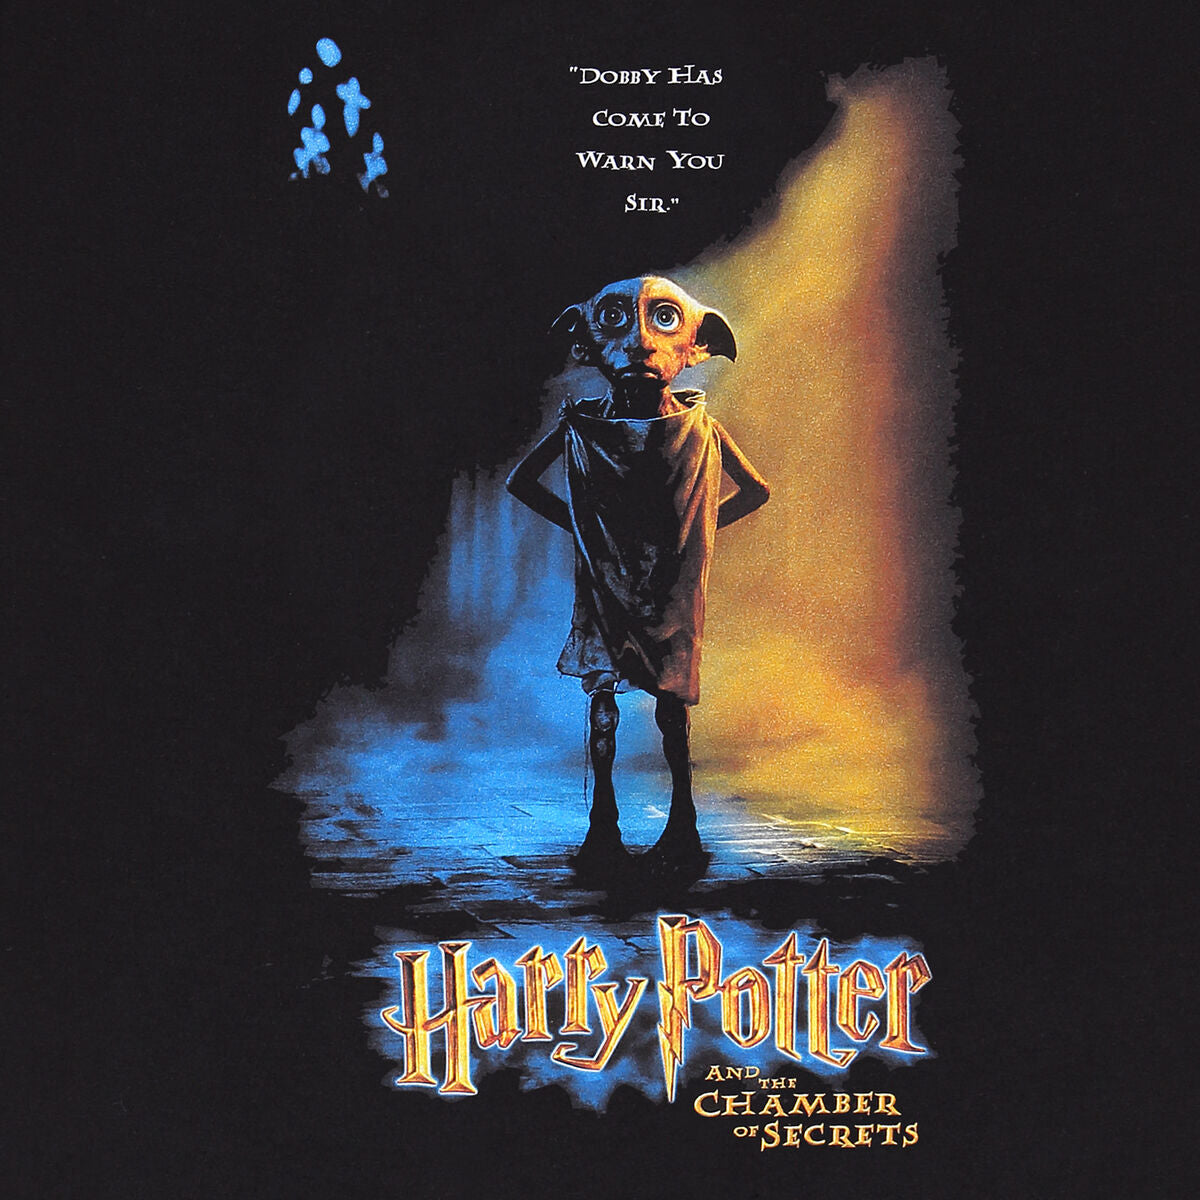 Short Sleeve T-Shirt Harry Potter Dobby Poster Black Unisex